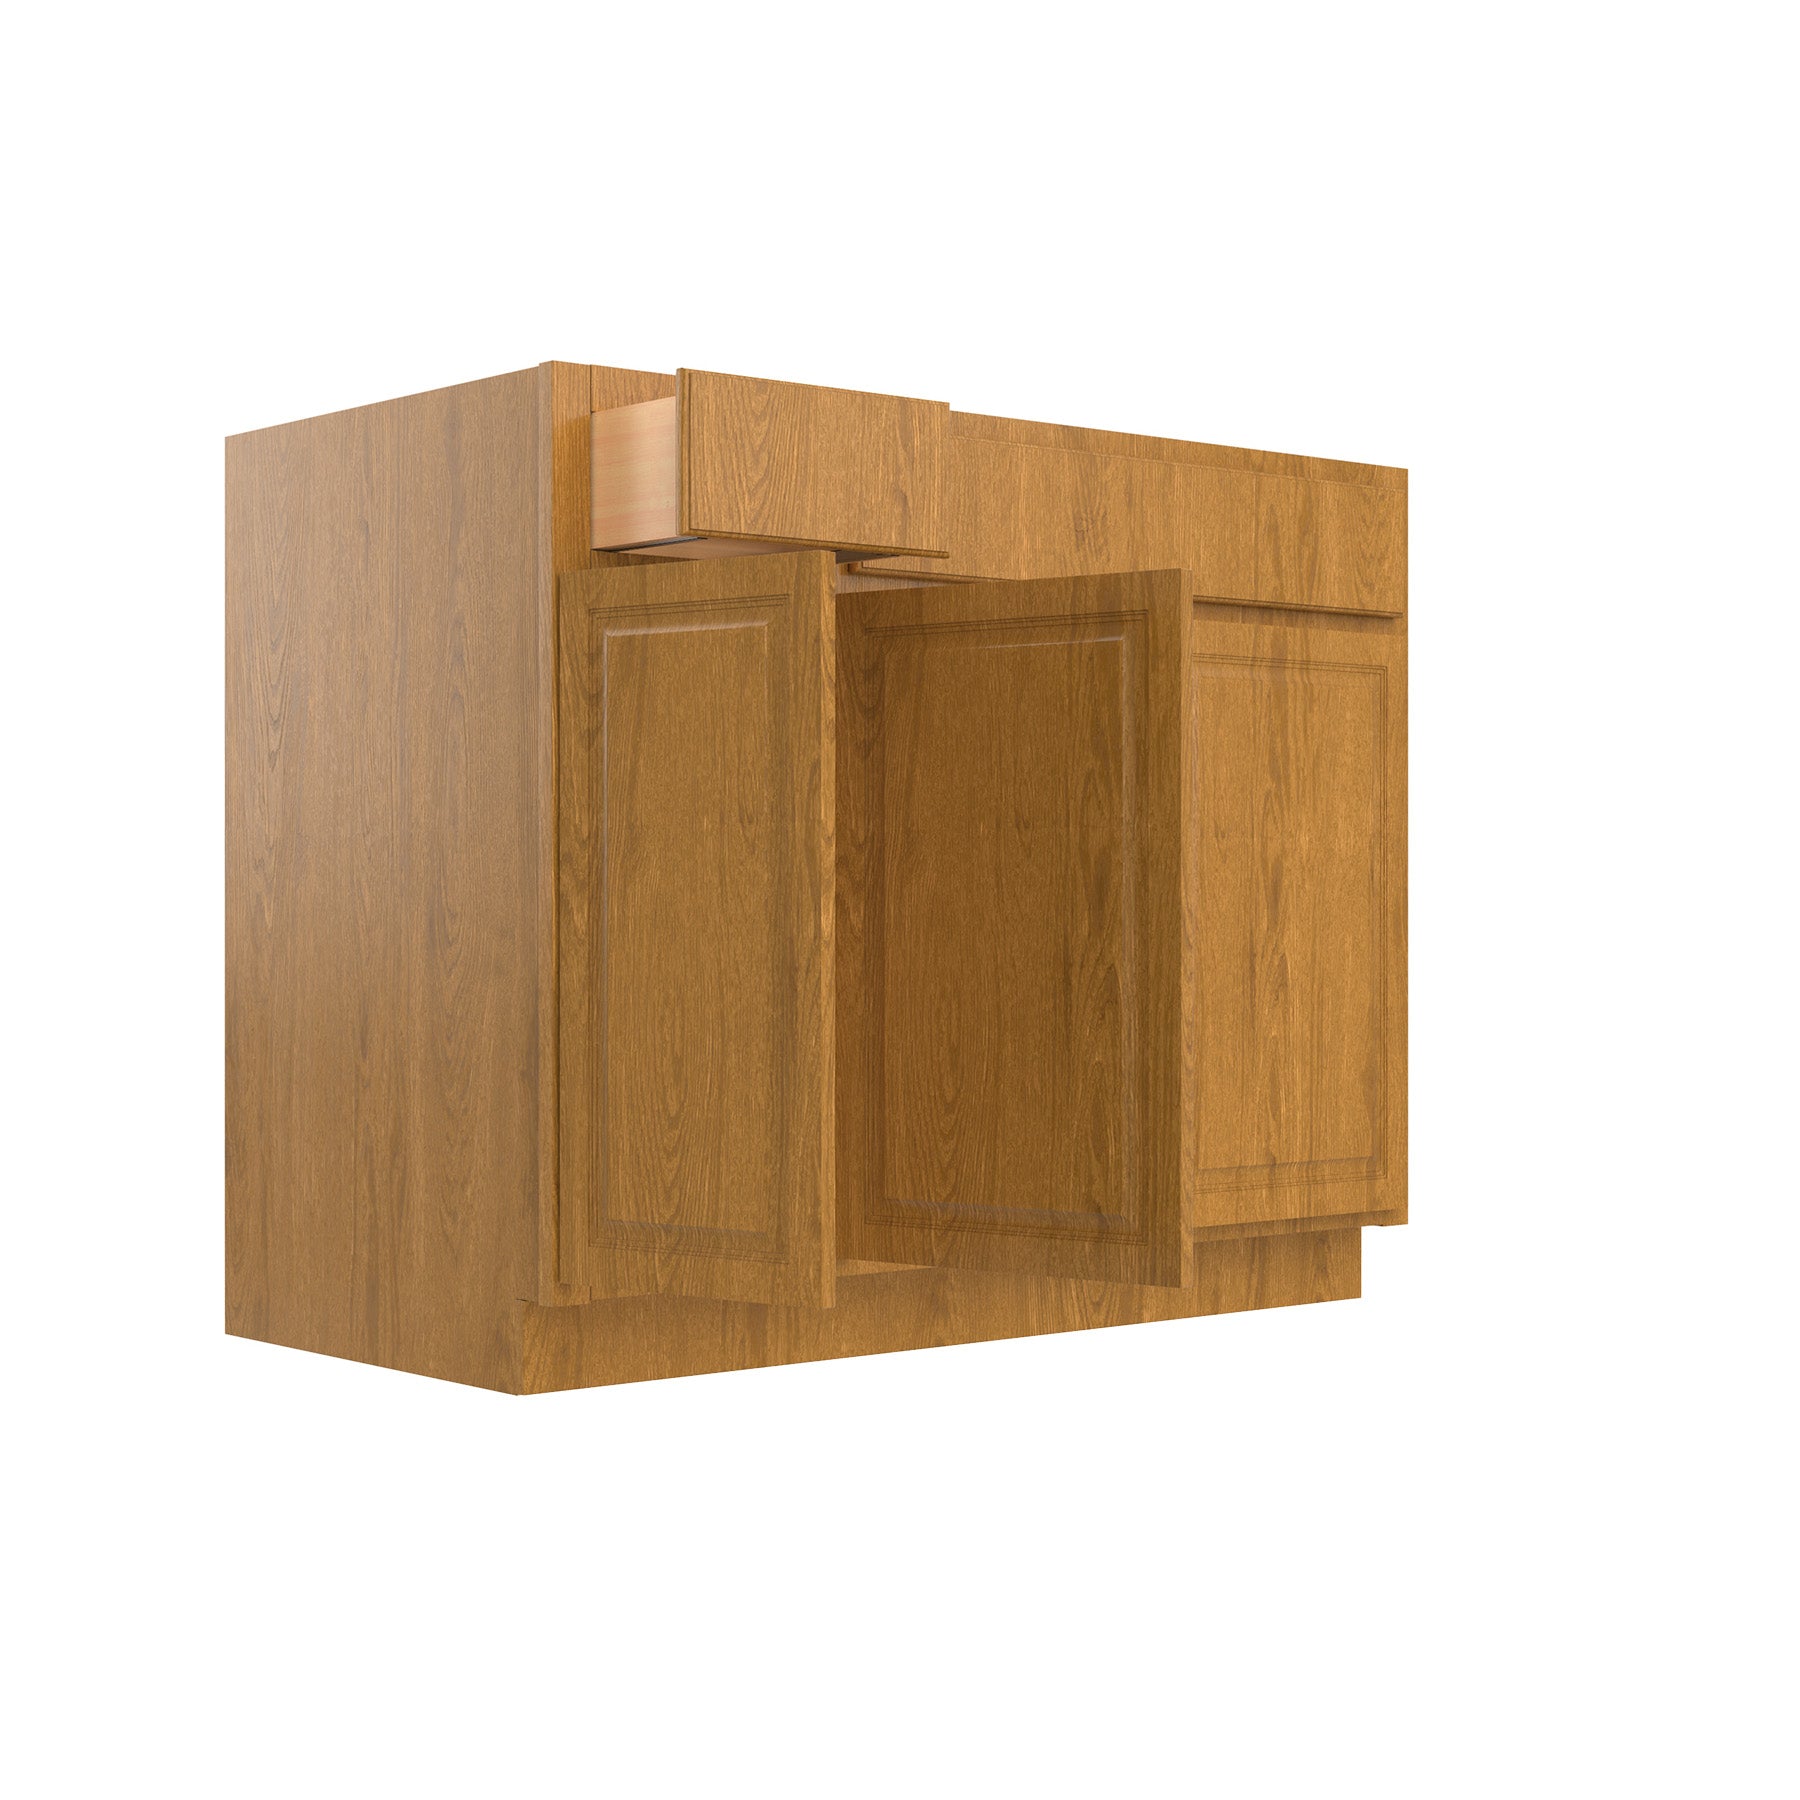 RTA - Country Oak - Sink Base Cabinet | 42"W x 34.5"H x 24"D